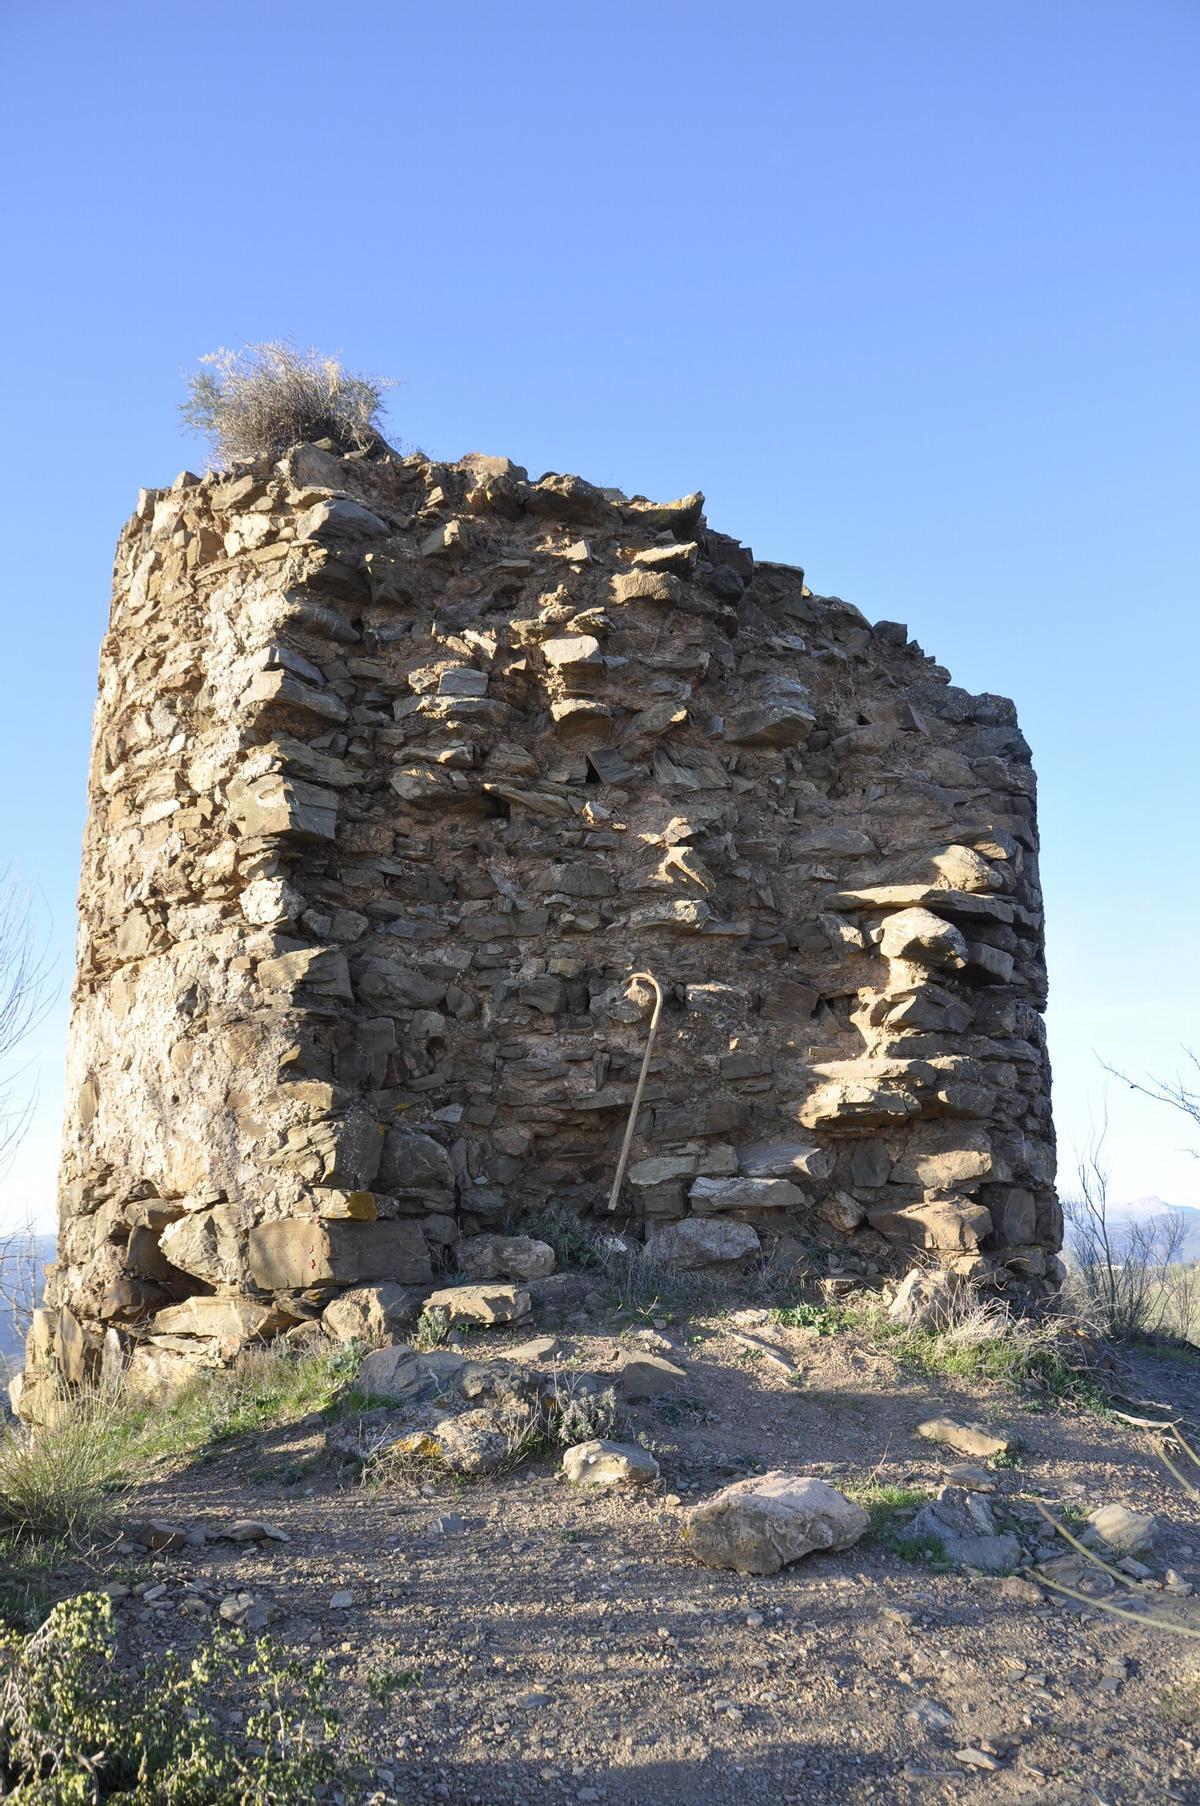 Detalle general de la torre, con un bastón para apreciar la altura.